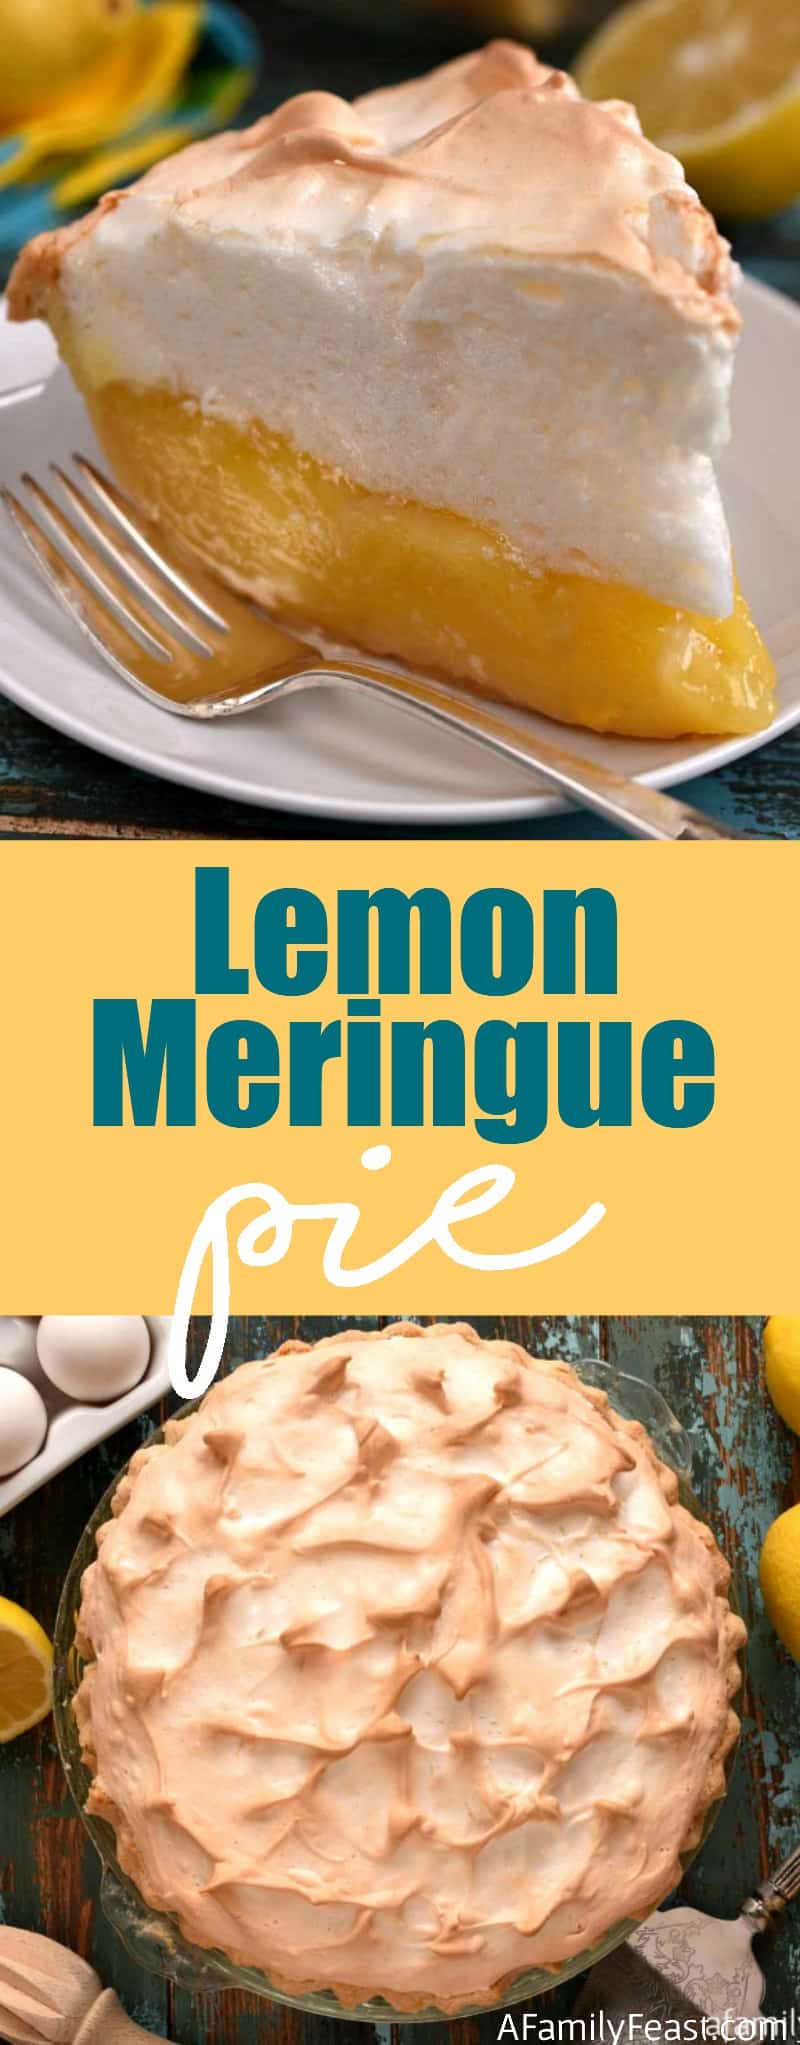 Lemon Meringue Pie - A Family Feast®